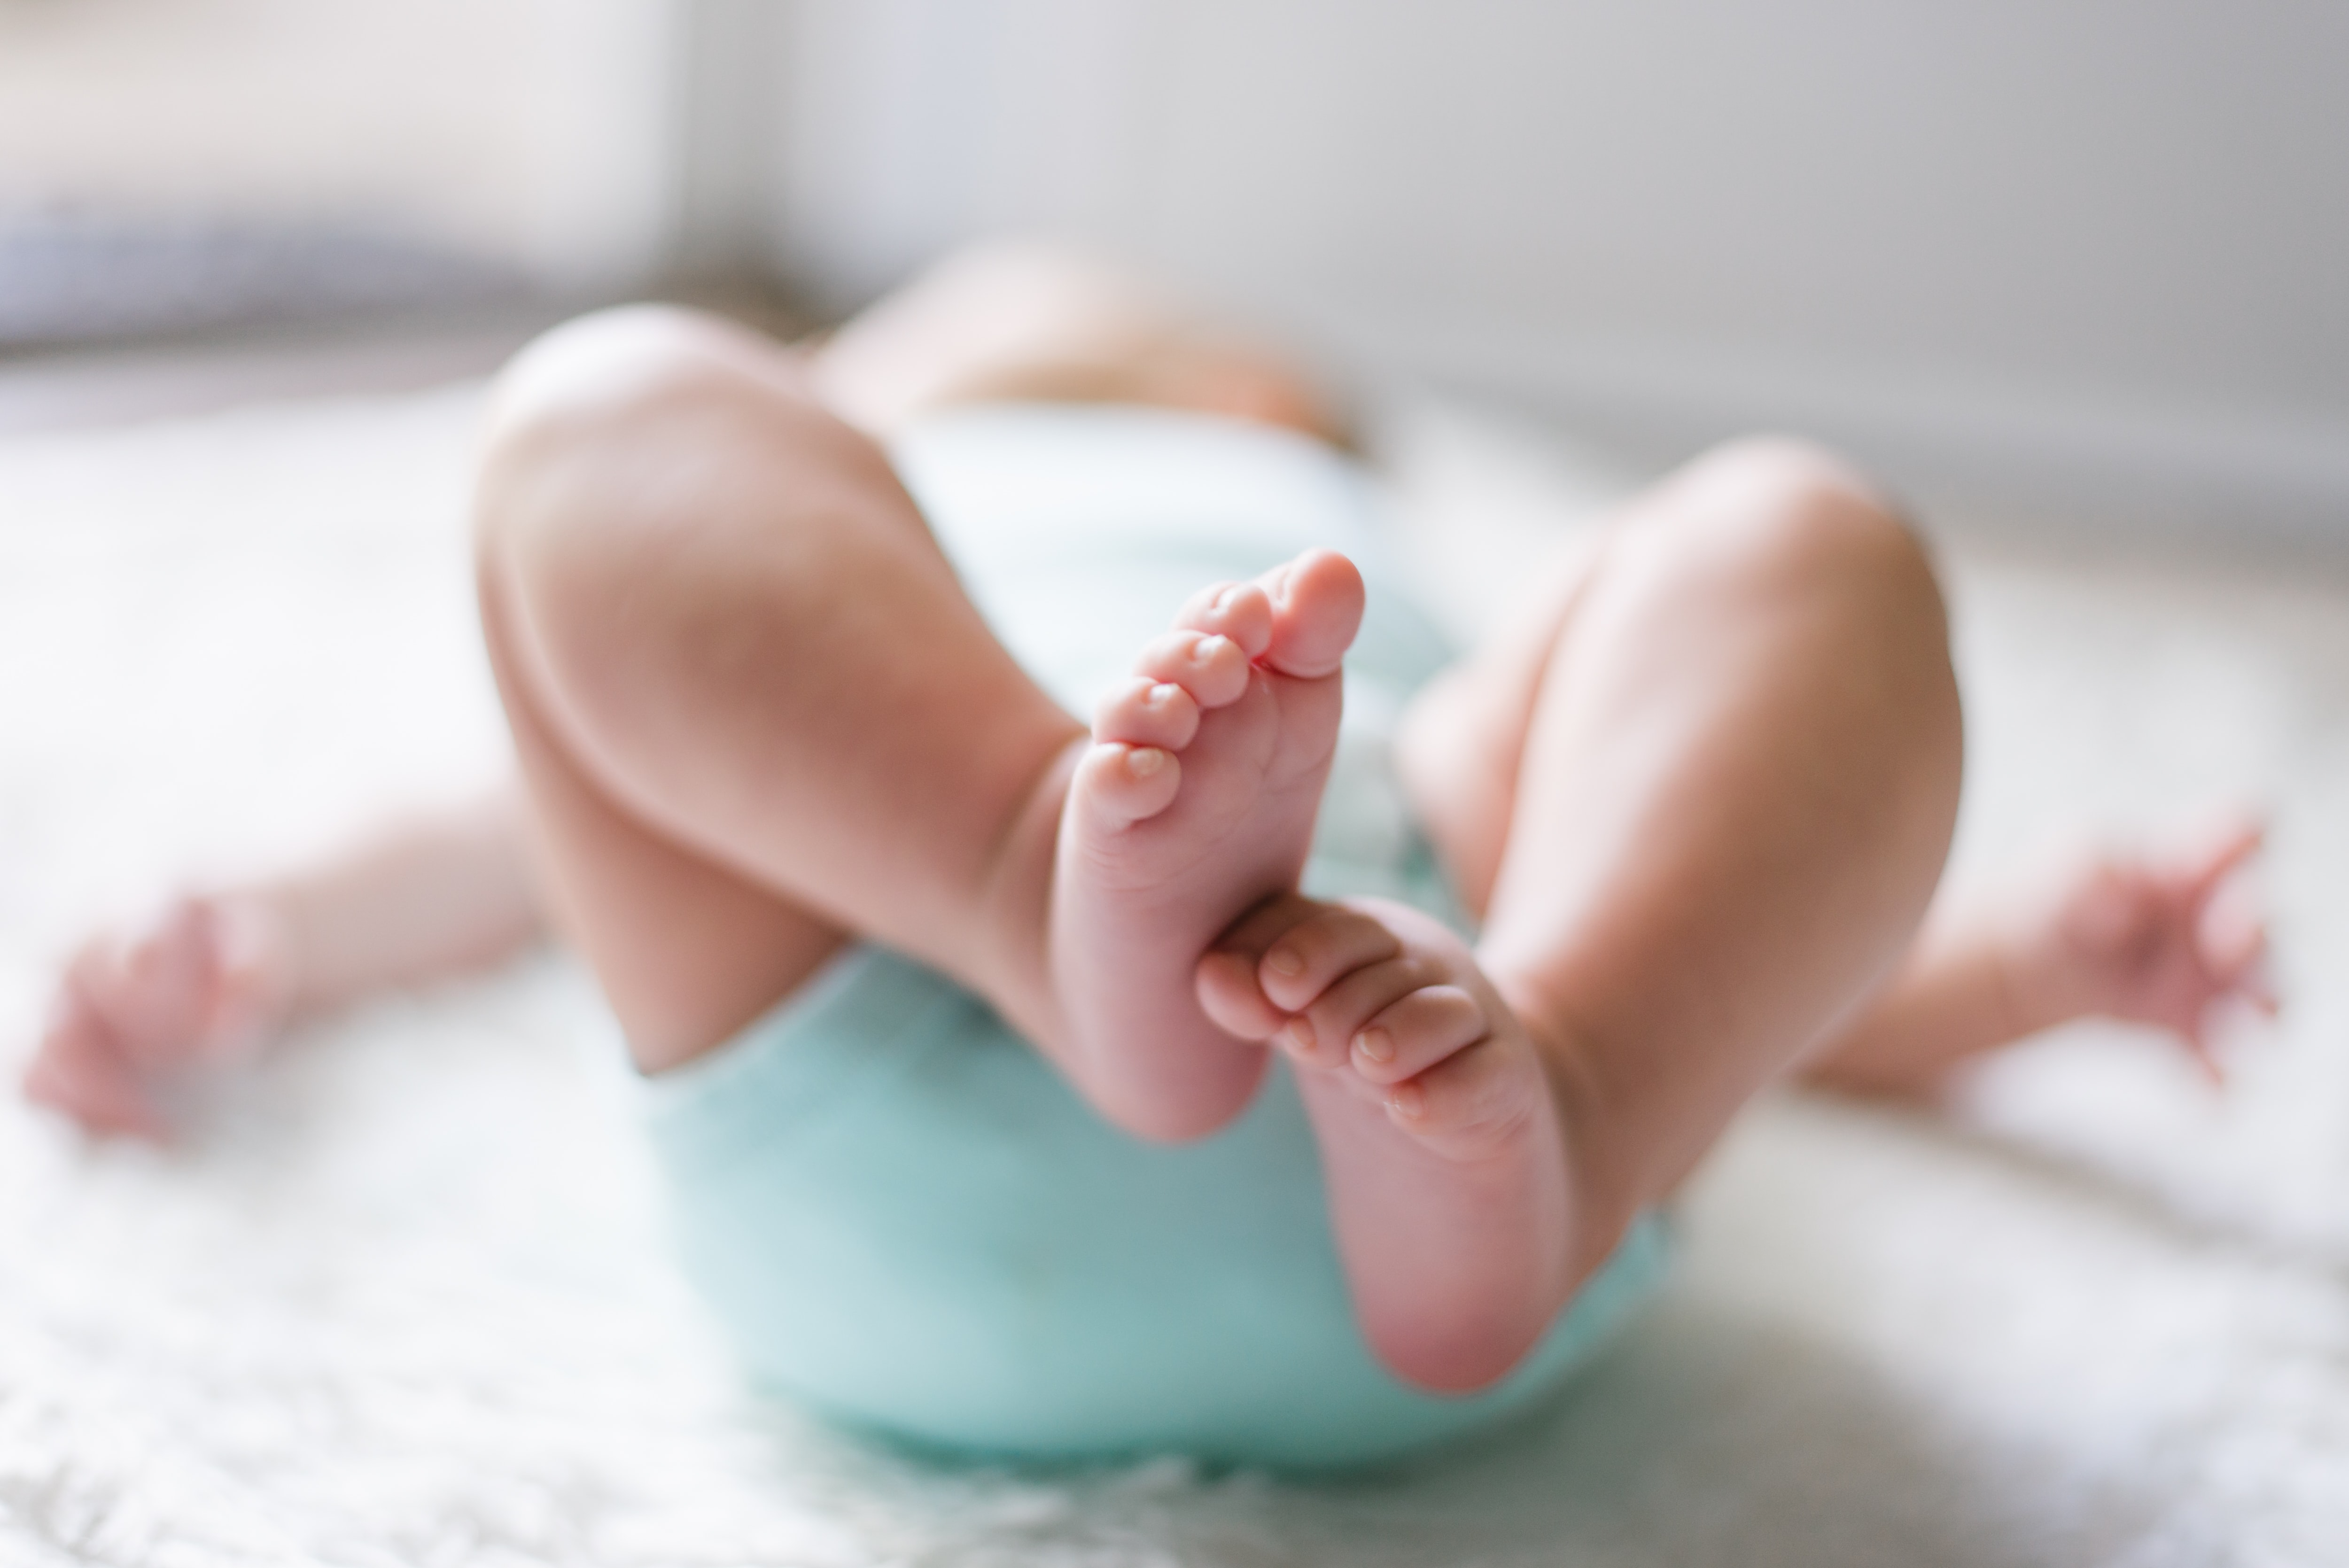 UŽAS U ZAGREBU: U bolnicu dovezena beba sa TEŠKIM povredama glave